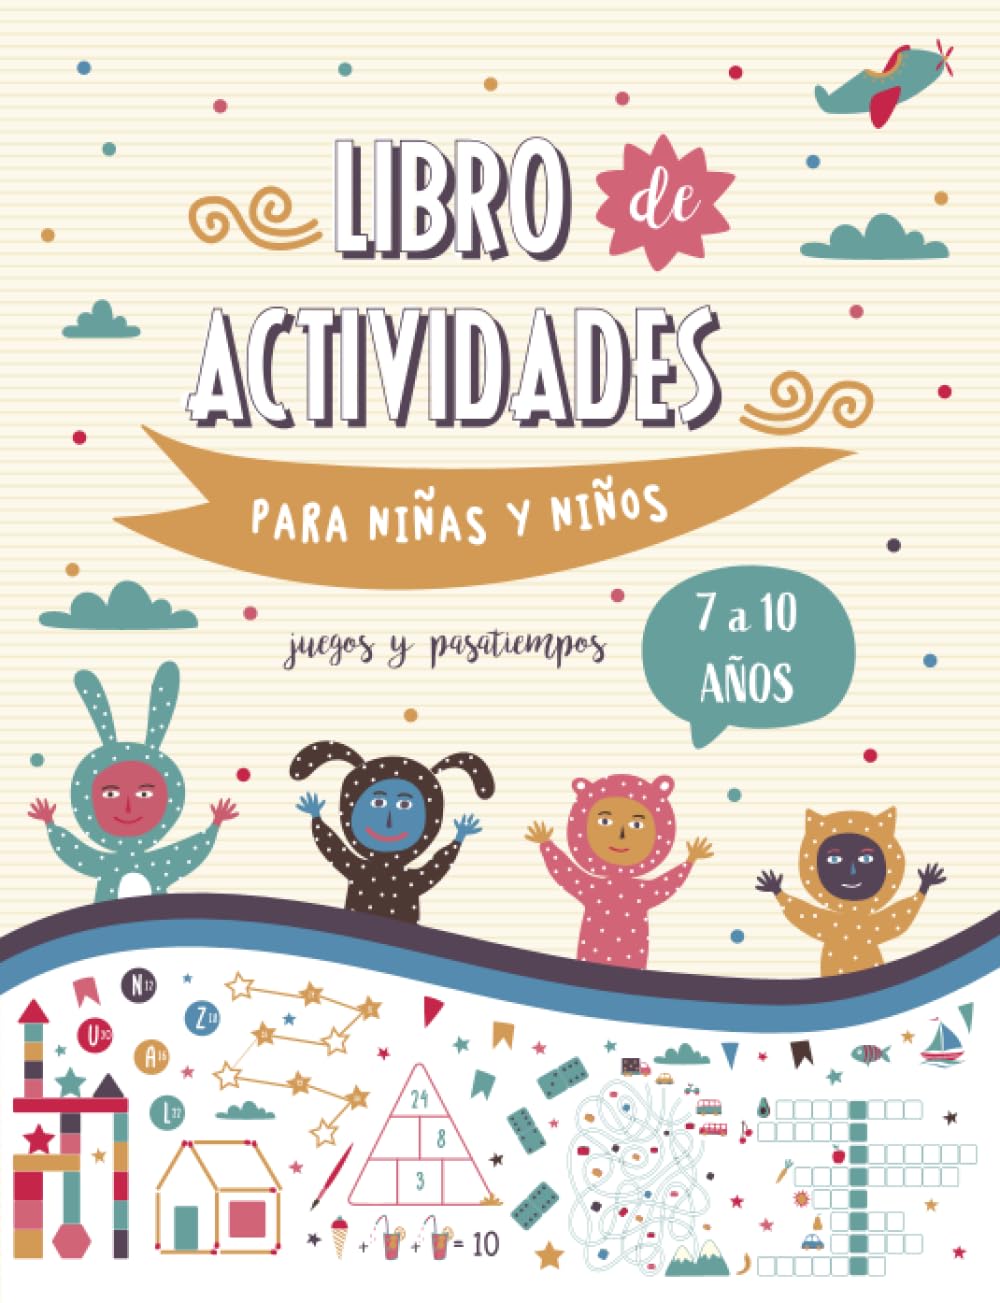 Libro: Libro de actividades para niños y niñas de 7 a 10 años, juegos y pasatiempos por Blue Baboon